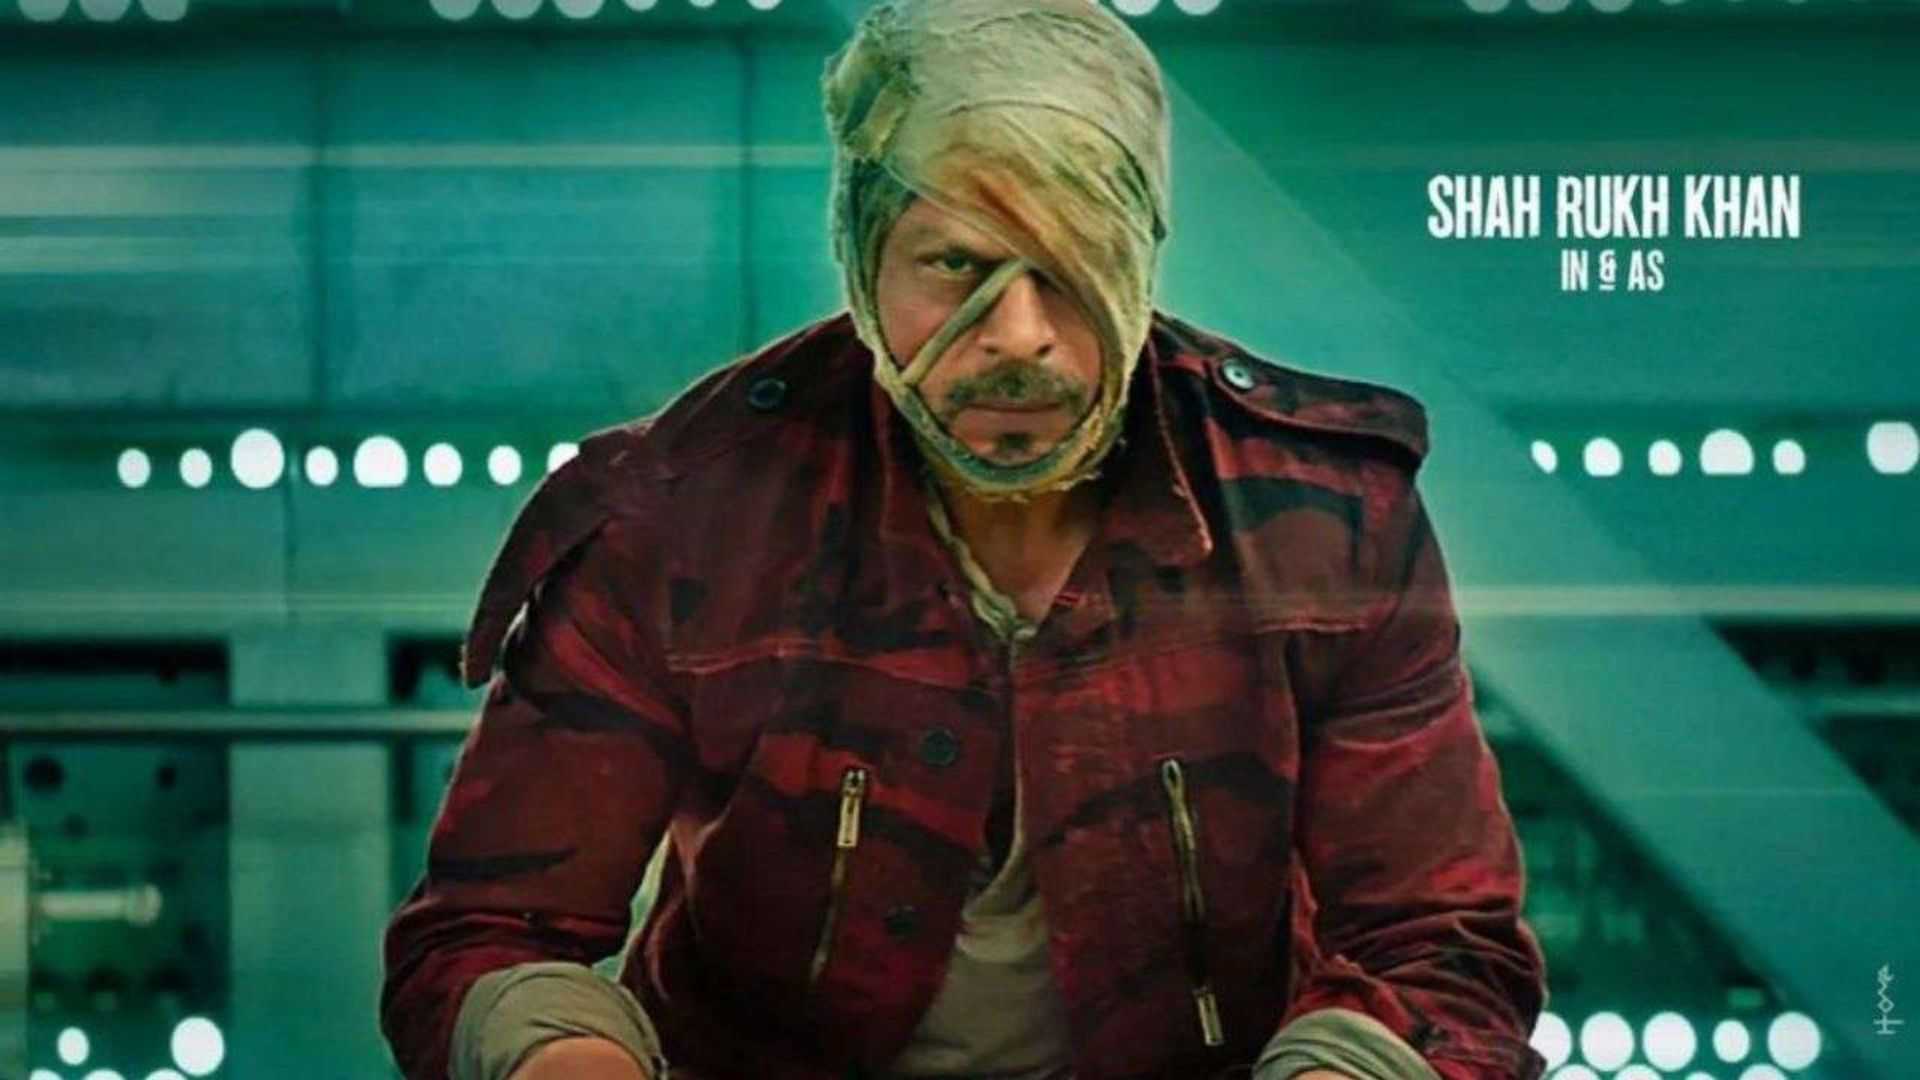 शाहरुख खान की फिल्म जवान ने रिलीज से पहले ही कर डाली करोड़ों की कमाई, जानिए कैसे